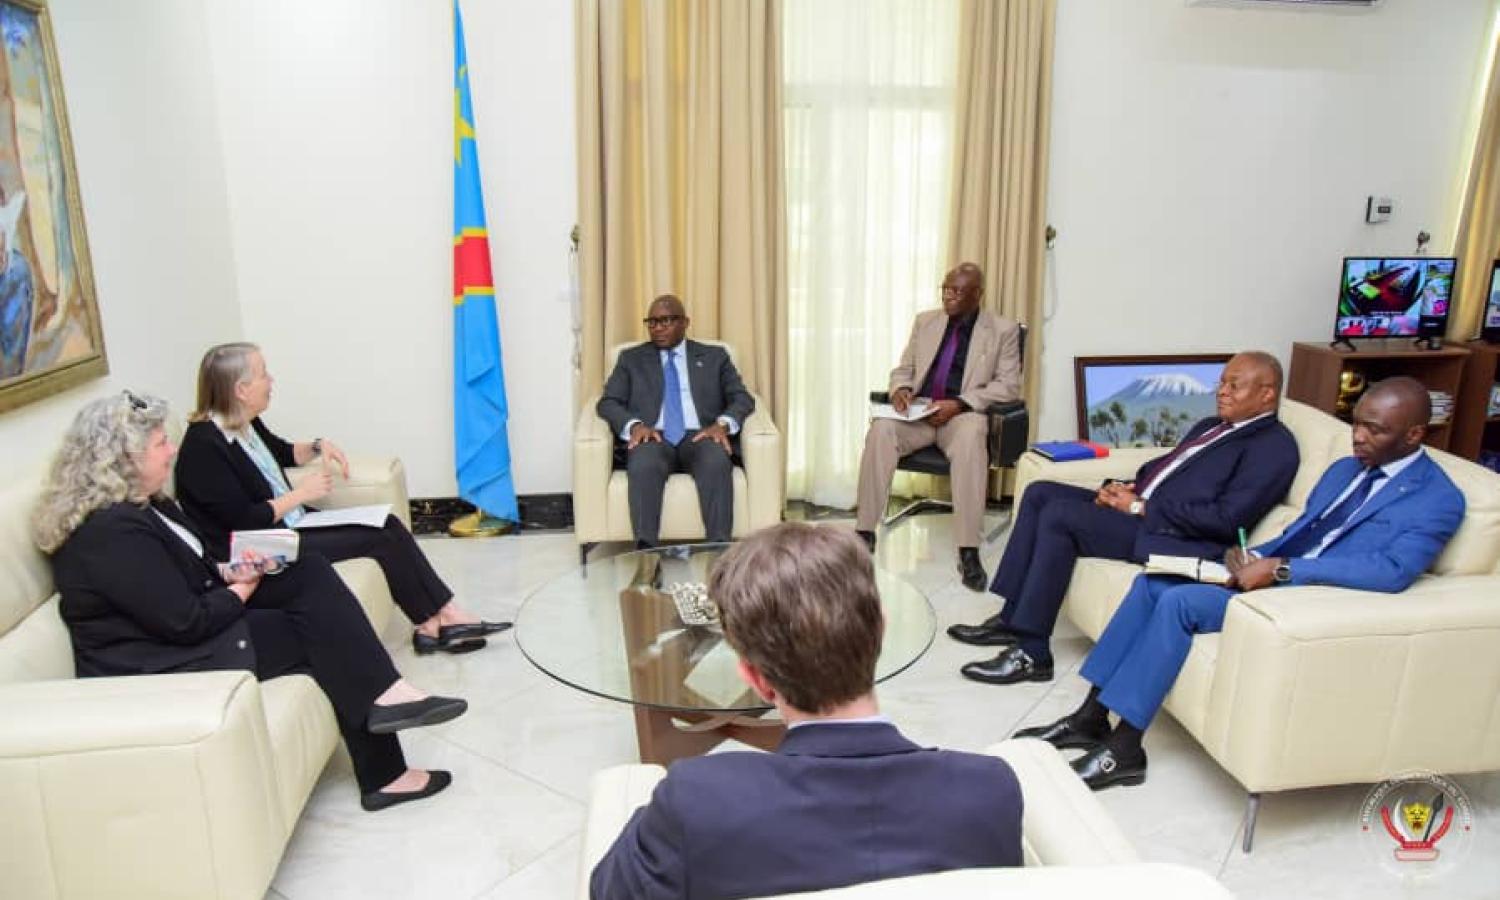 Le Premier ministre congolais Jean-Michel Sama Lukonde avec l’ambassadrice des USA en RDC , Lucy Tamlyn, et Chasper Sarott, ambassadeur de la Confédération Suisse en RDC.